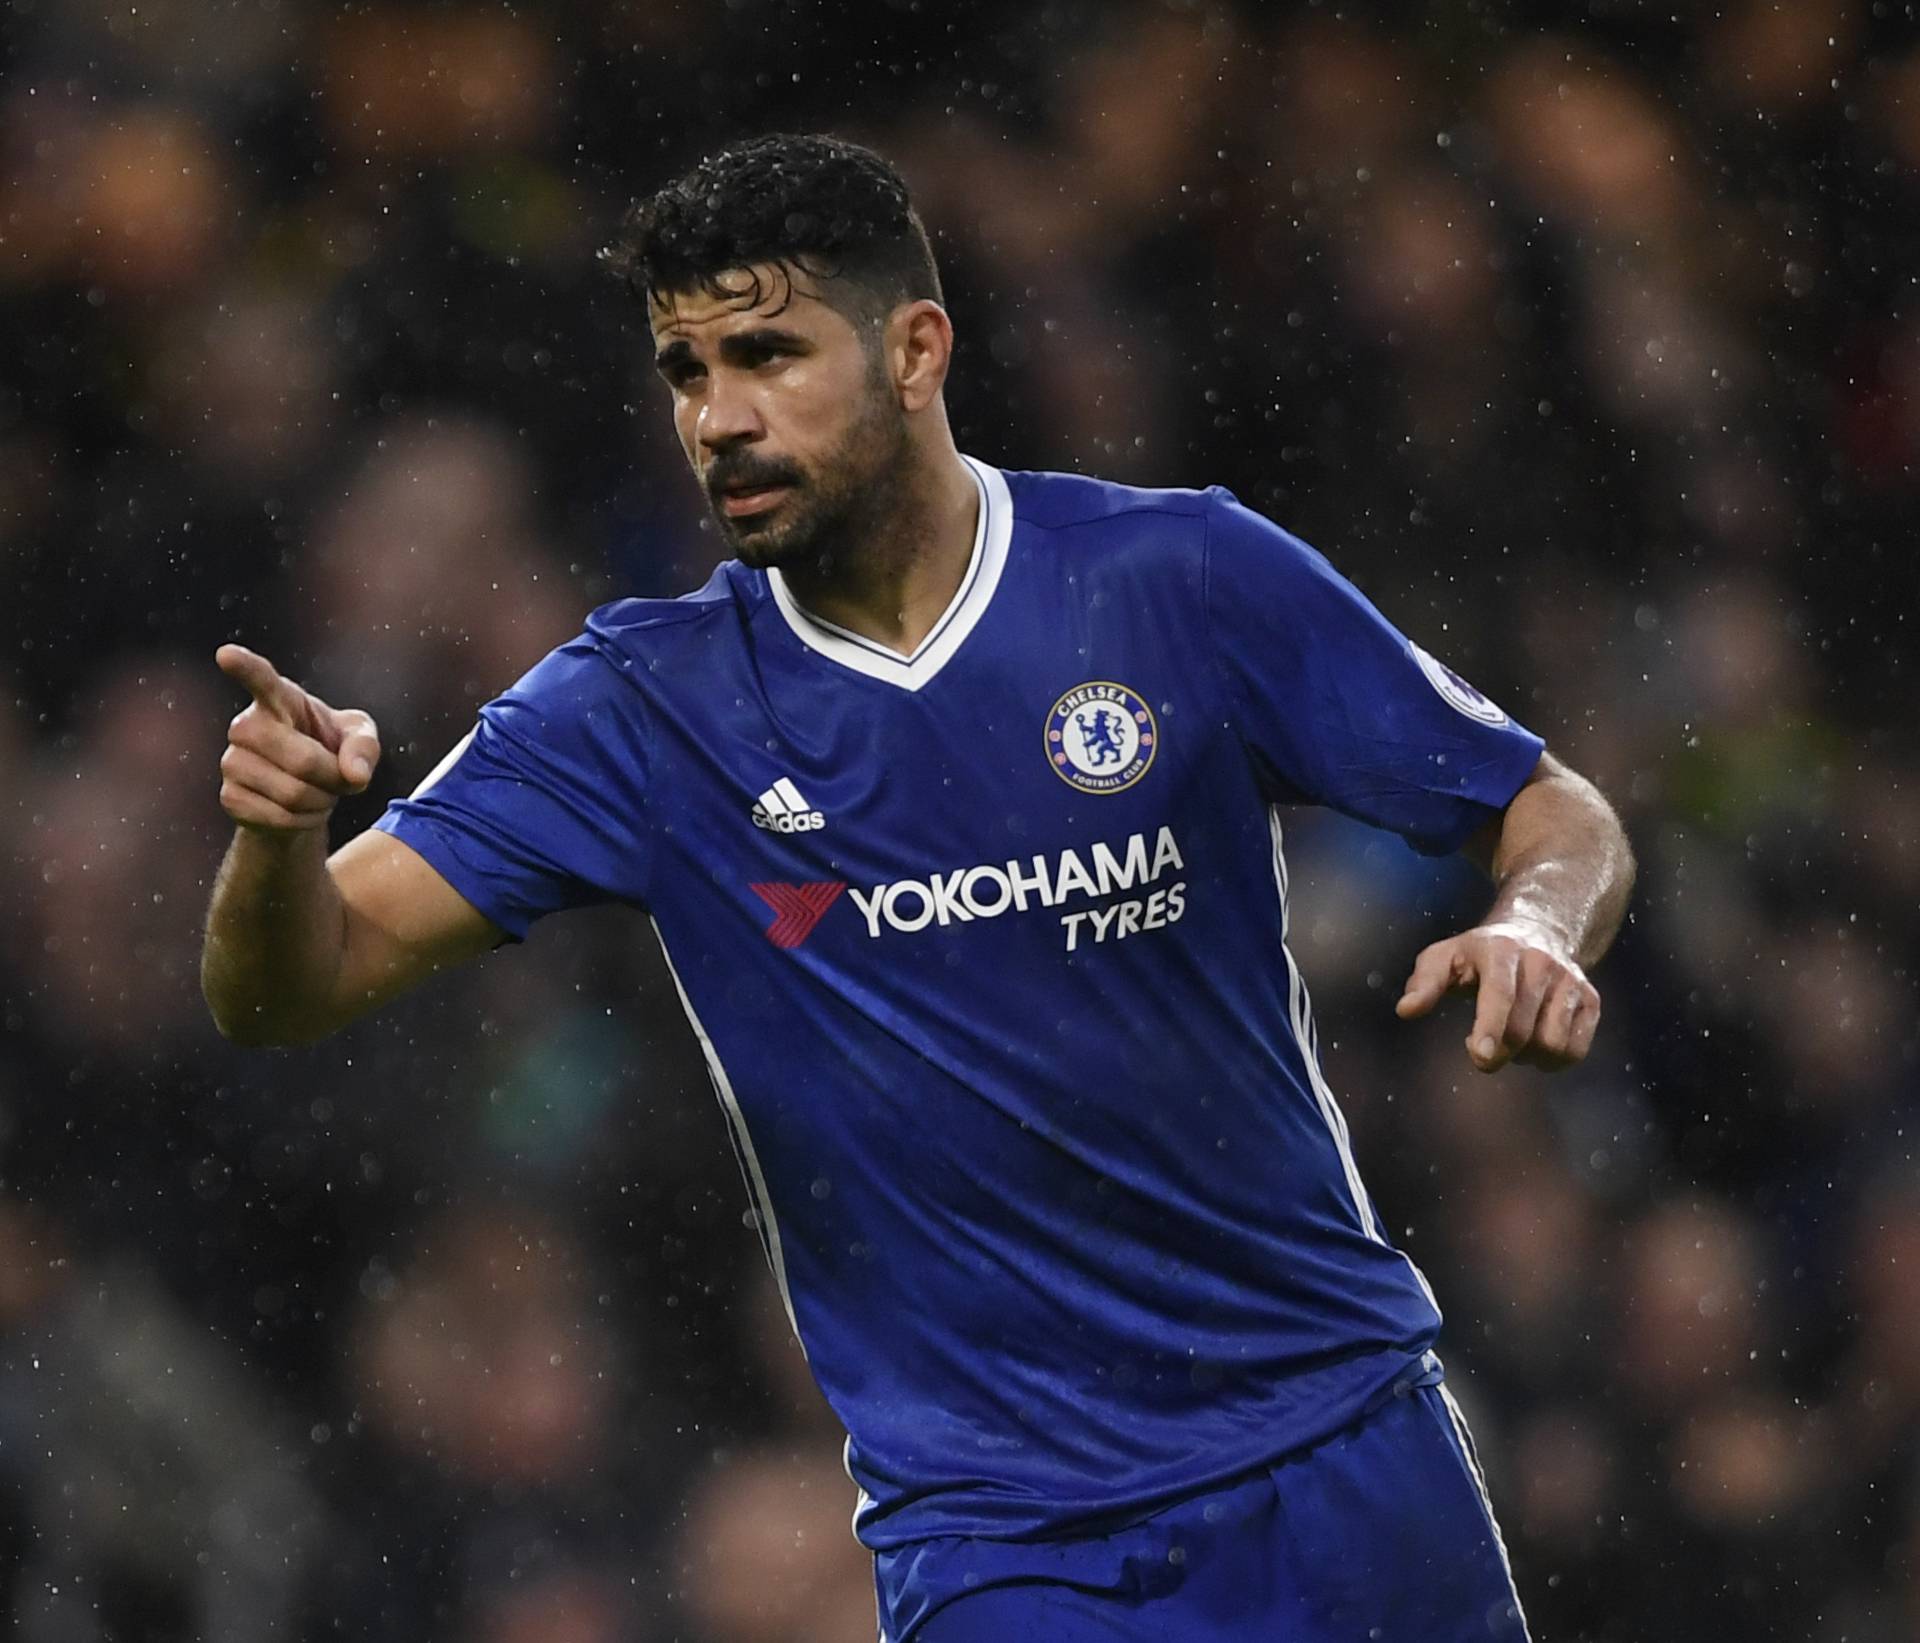 Chelsea's Diego Costa celebrates scoring their third goal